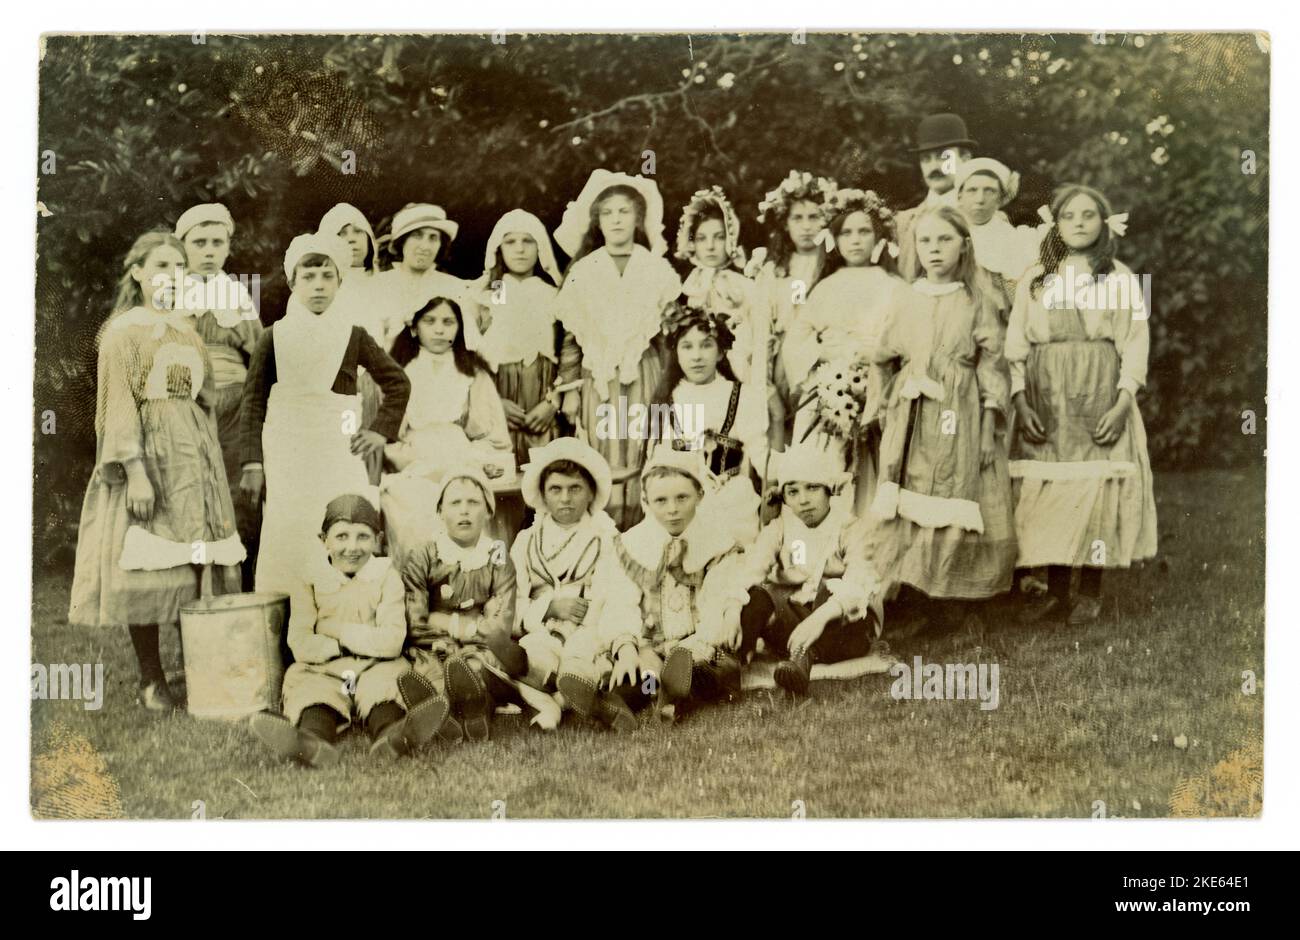 Carte postale originale du début des années 1900 d'un groupe d'enfants à l'extérieur portant une robe de fantaisie, un homme semble être habillé comme Charlie Chaplin ou pourrait juste être la mode du jour. Vers 1919 Royaume-Uni Banque D'Images